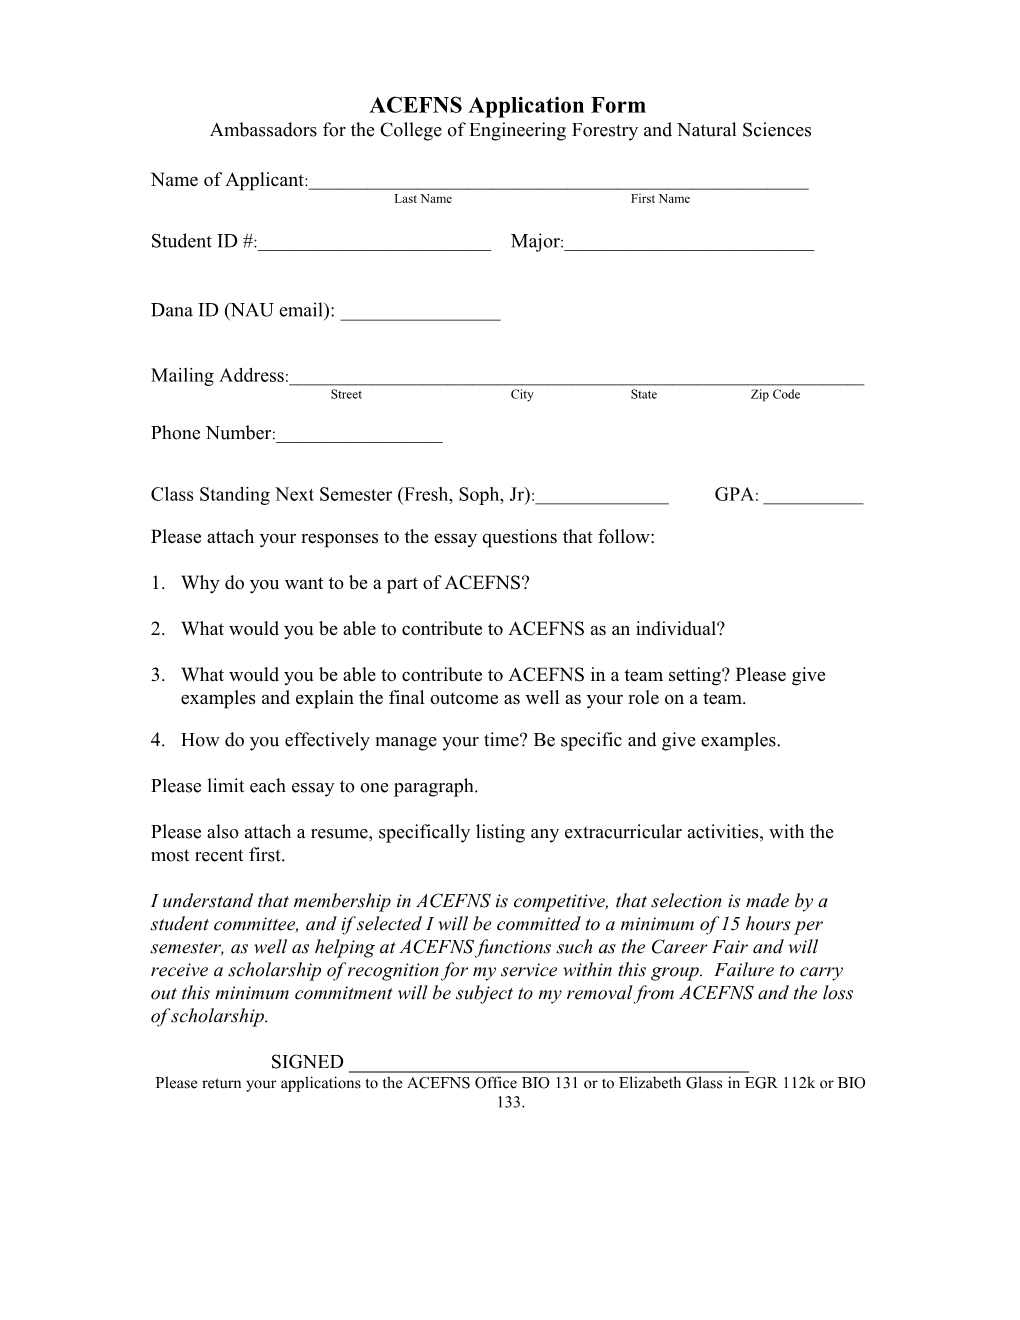 ACCET Application Form